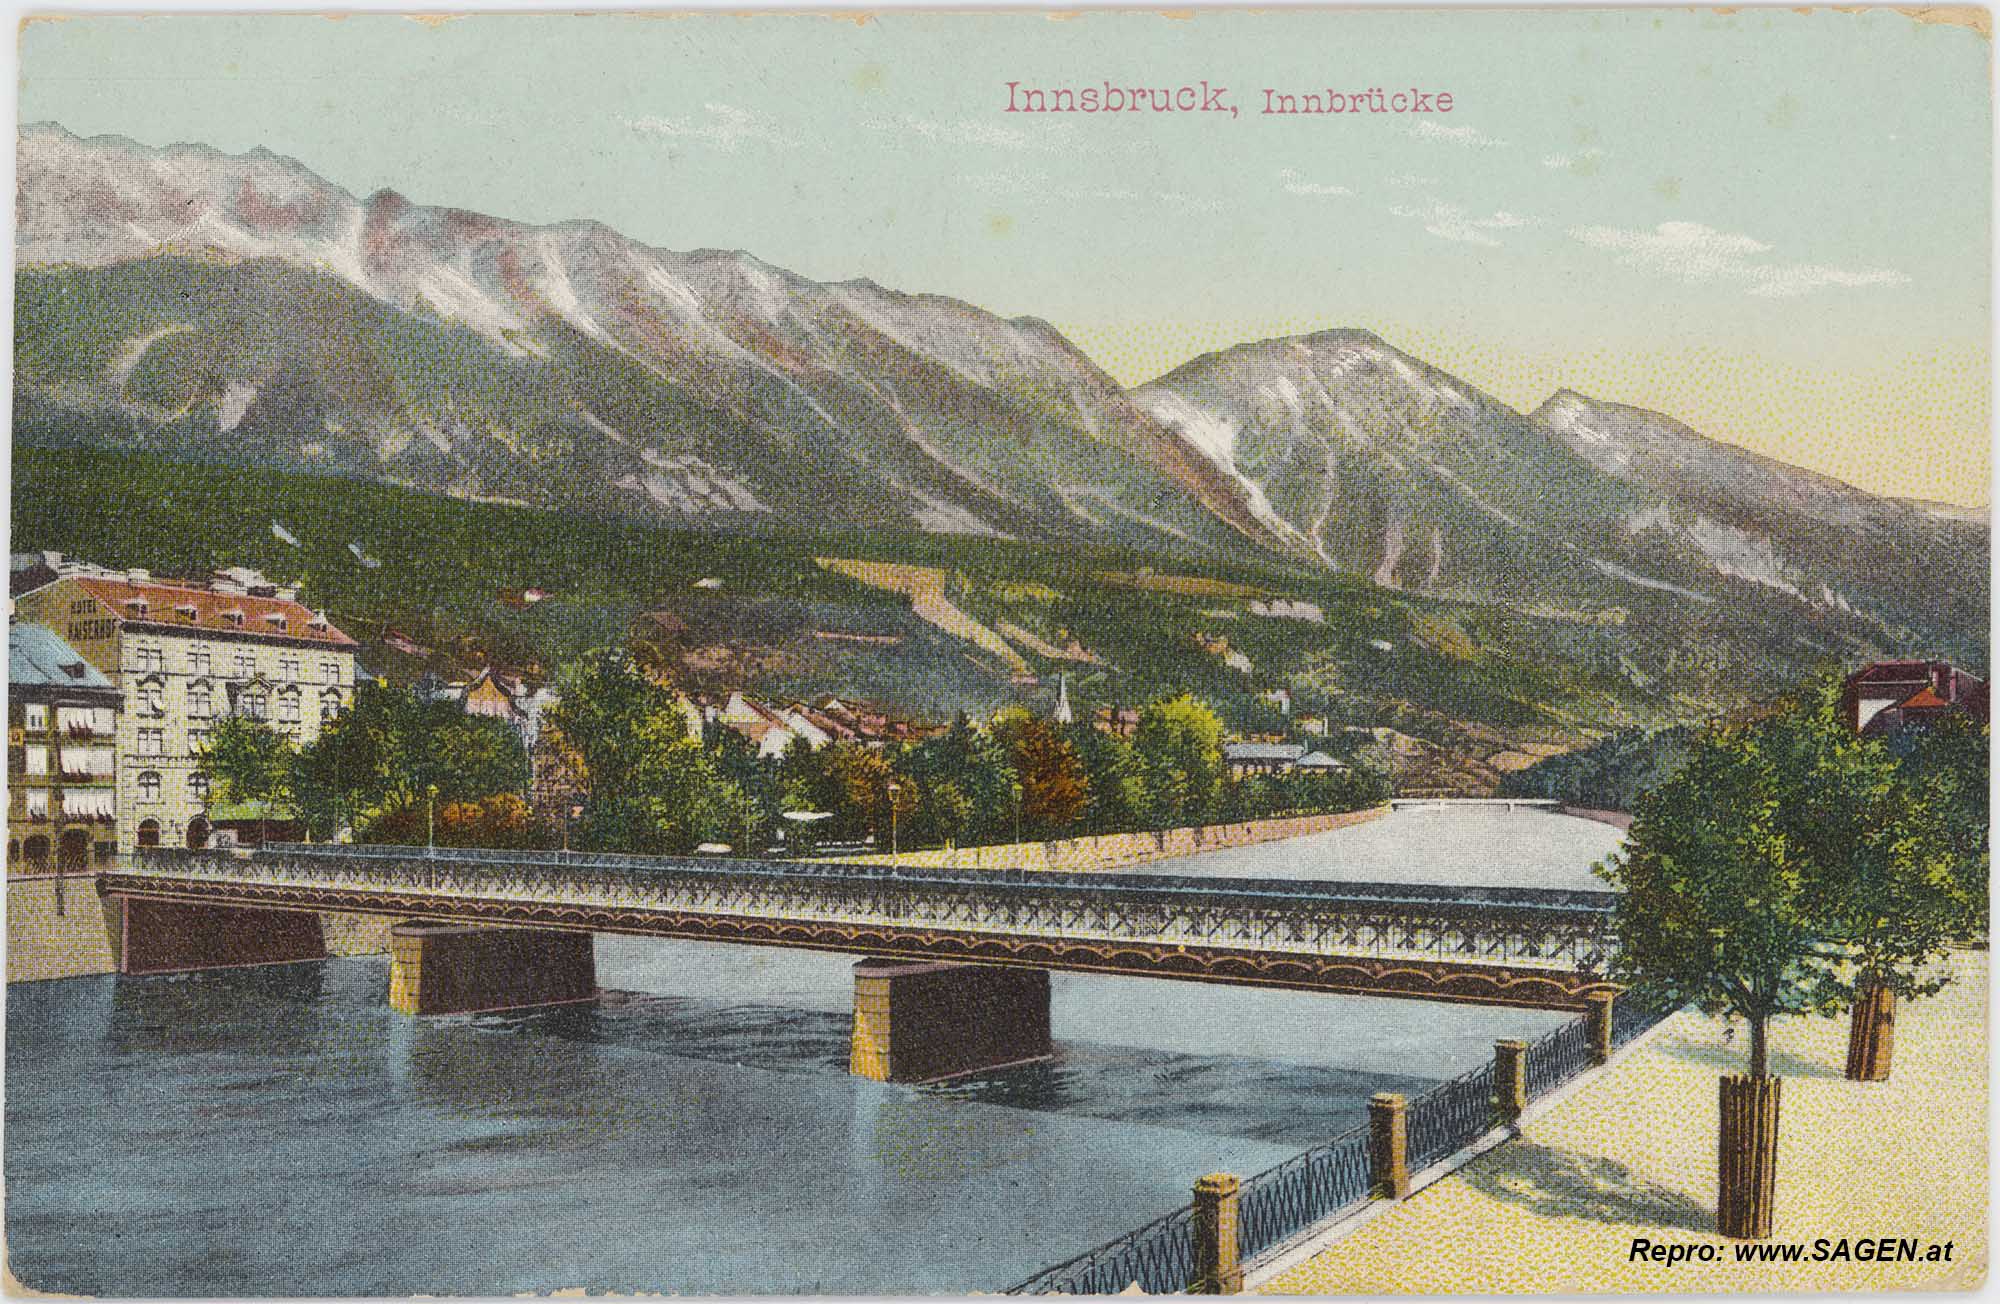 Innsbruck, Innbrücke